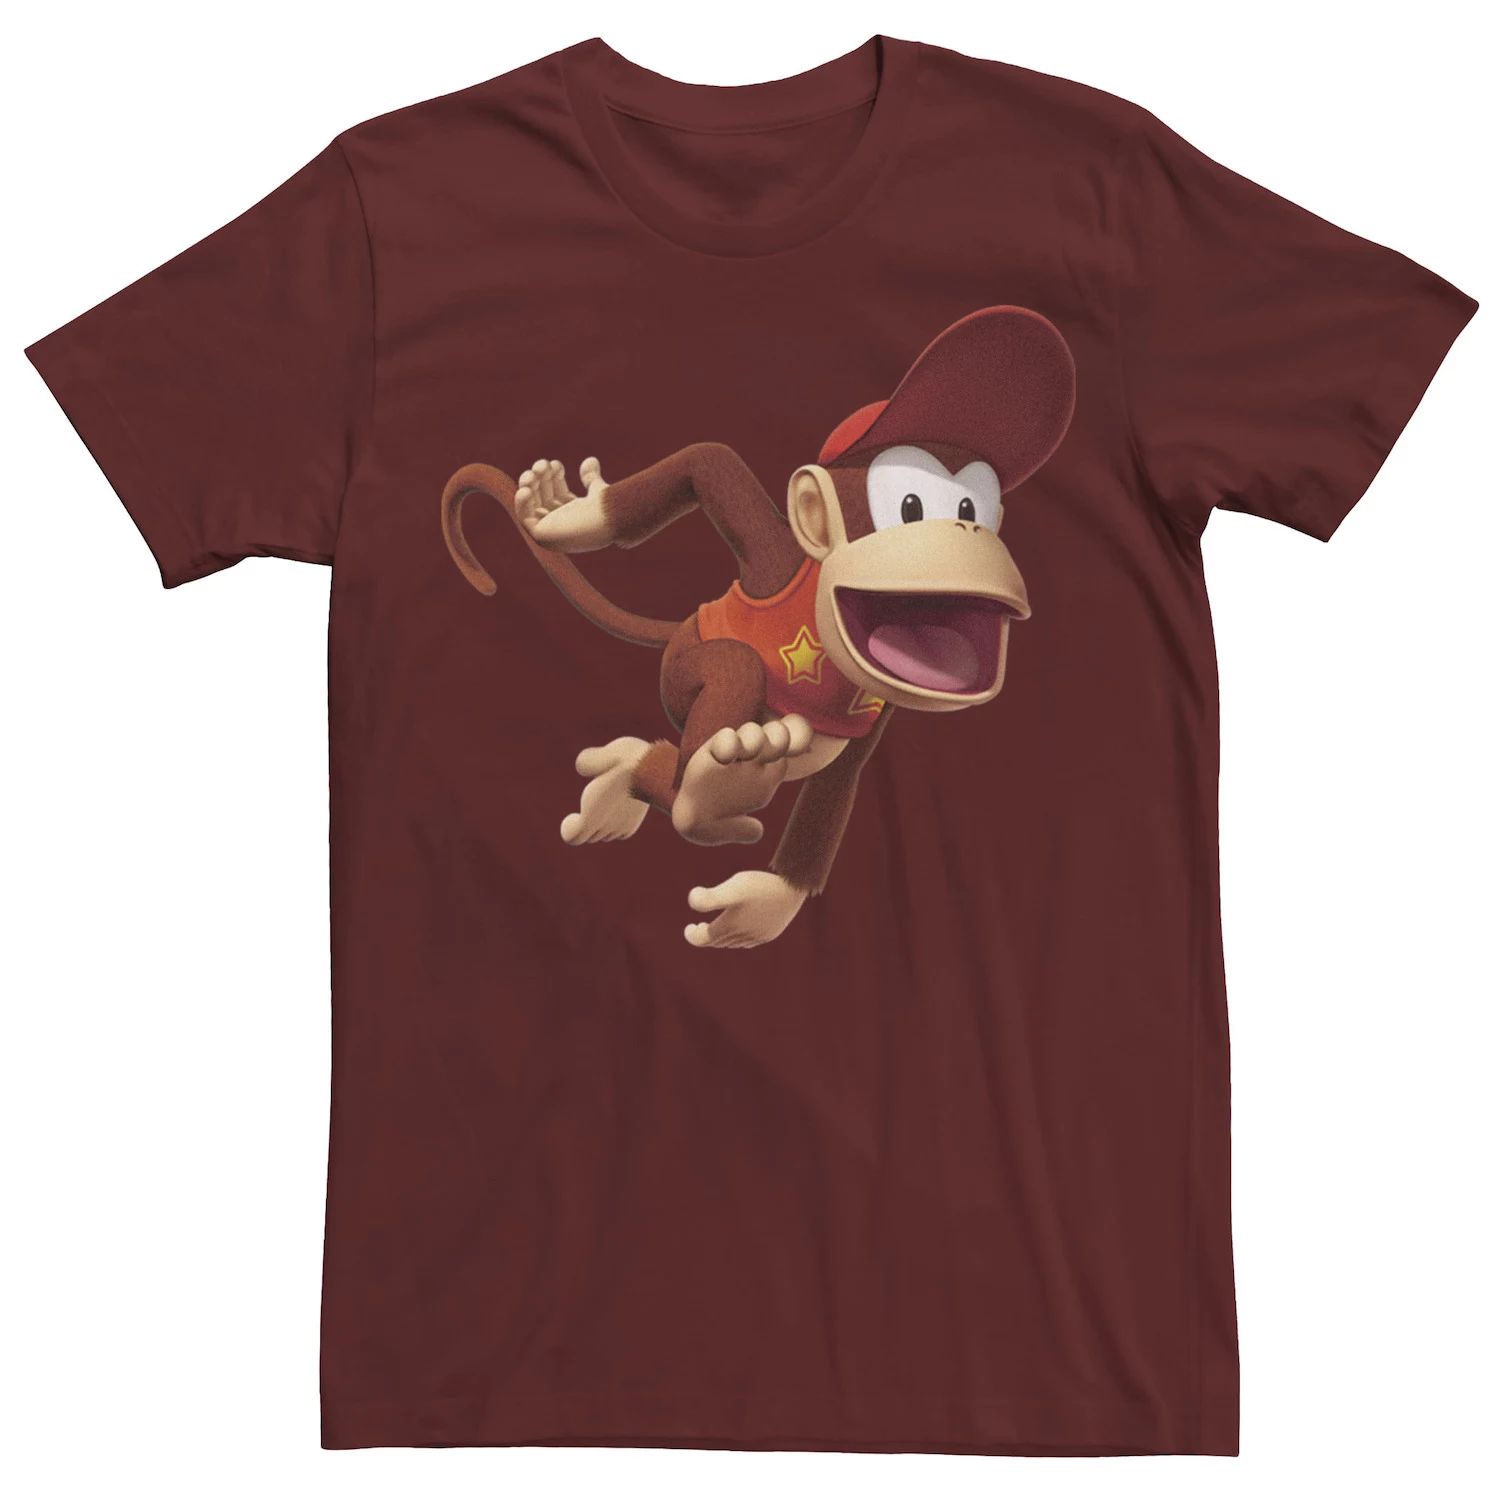 Мужская футболка с портретом Nintendo Diddy Kong Licensed Character фото